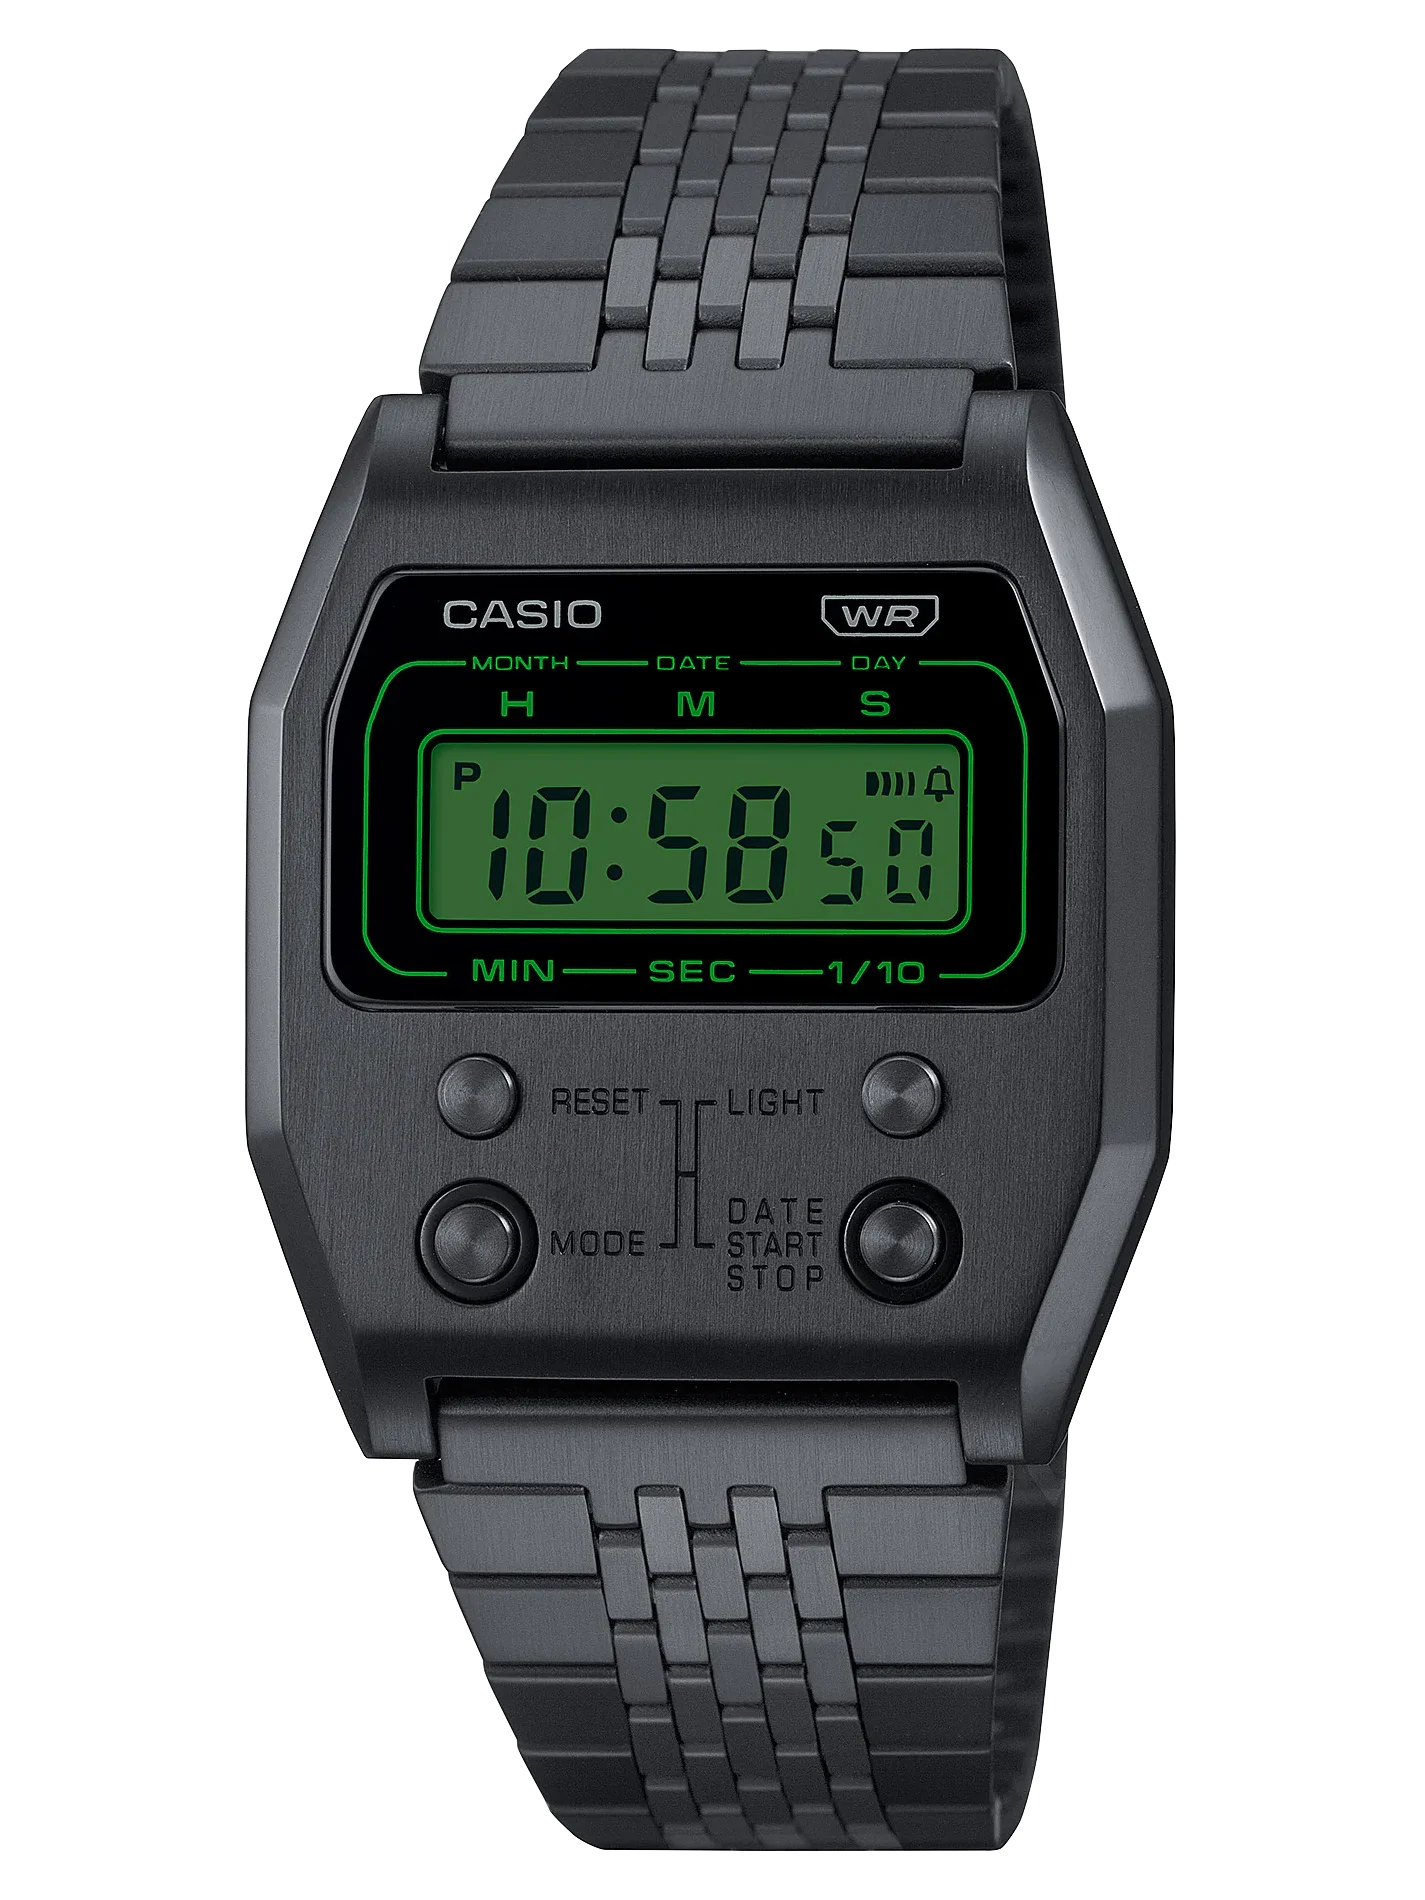 Relojes Casio Tienda Oficial Online, Baroli